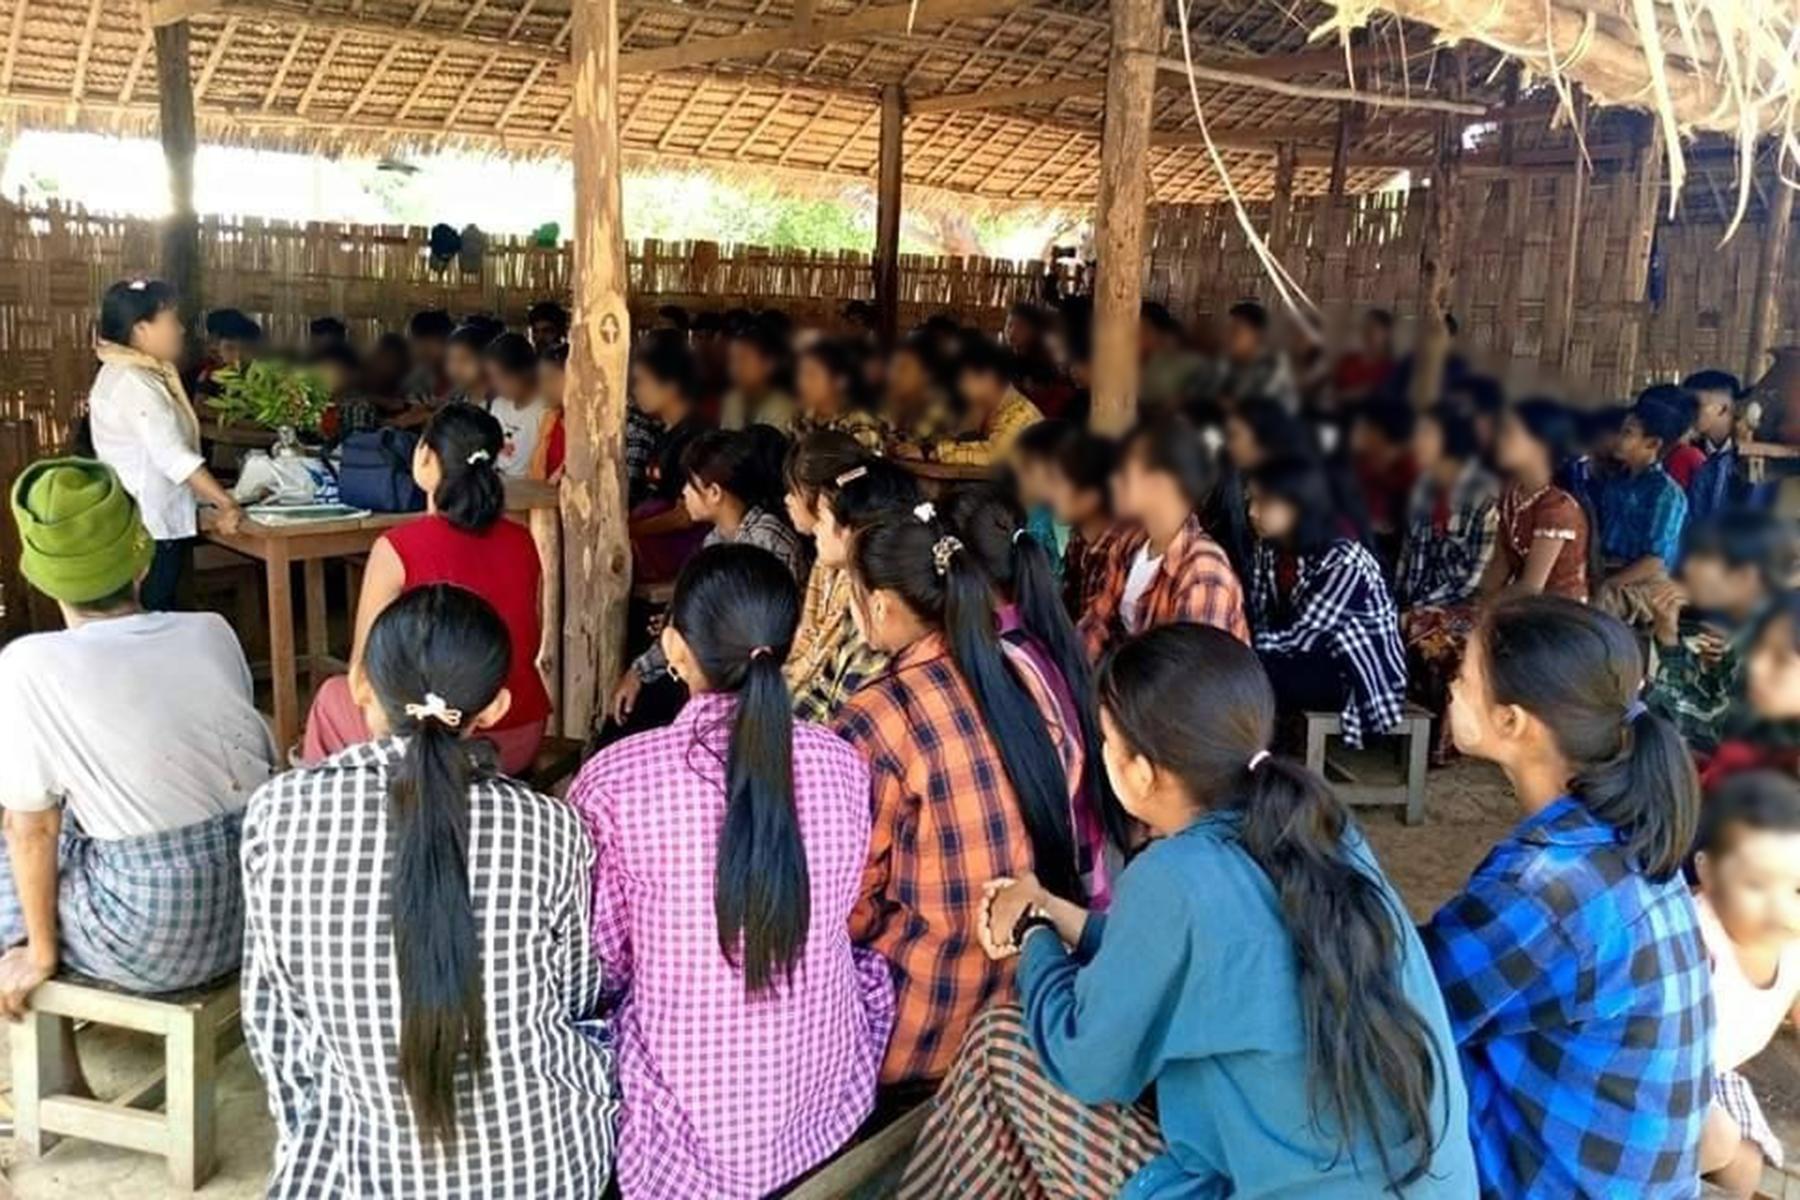 ပုလဲနယ်မှာ ကျား/မ အခြေပြု အကြမ်းဖက်မှုနဲ့အဓမ္မပြုကျင့်ခံရမှု လျော့ကျဖို့ အသိပညာပေး